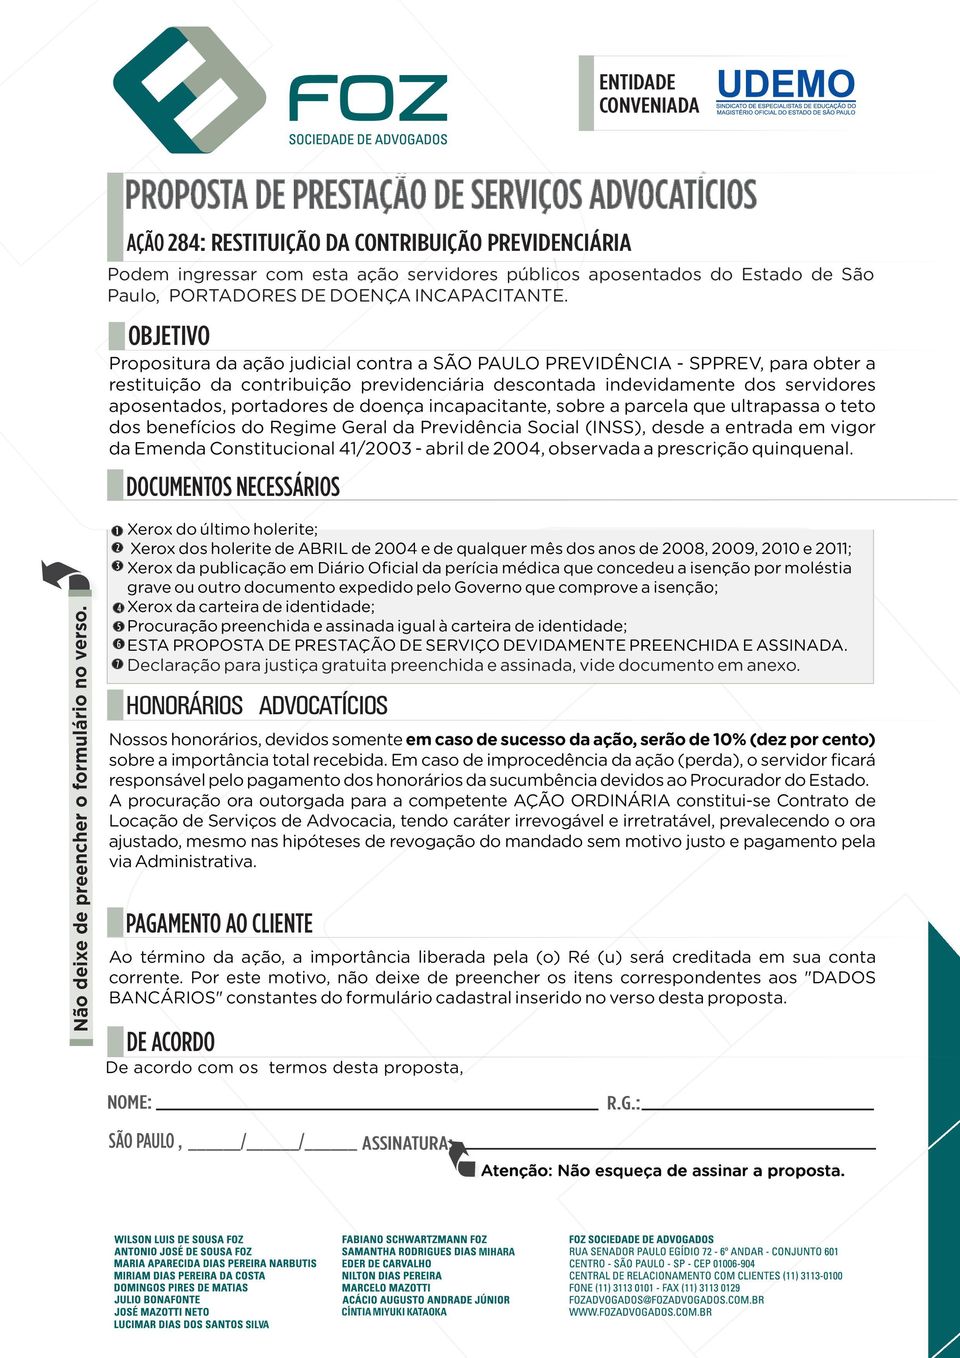 OBJETIVO Propositura da ação judicial contra a SÃO PAULO PREVIDÊNCIA - SPPREV, para obter a restituição da contribuição previdenciária descontada indevidamente dos servidores aposentados, portadores